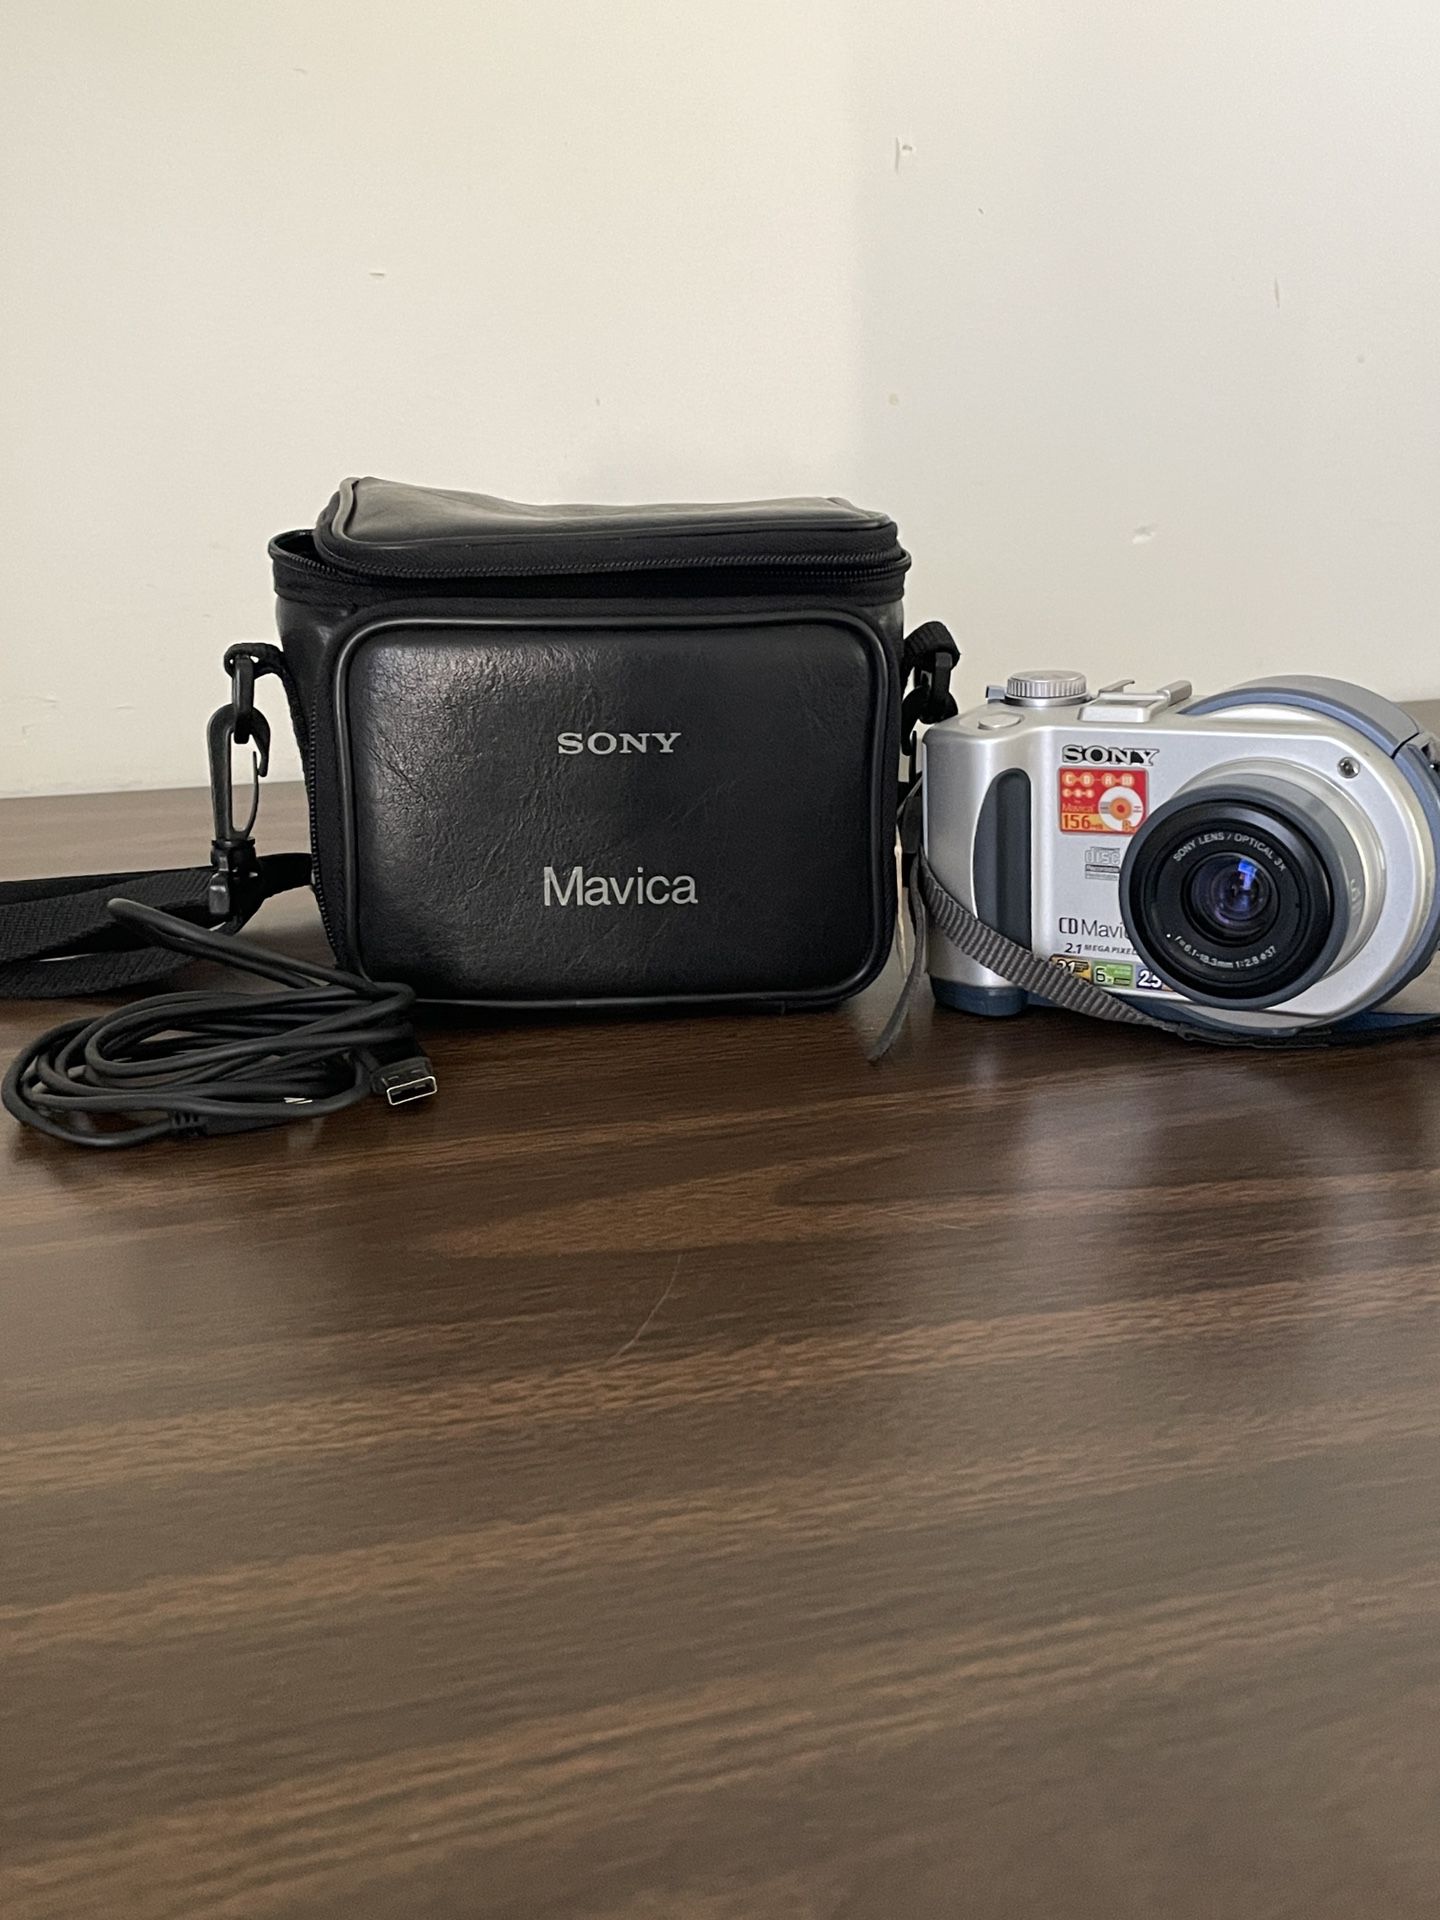 Sony Mavica Camera 